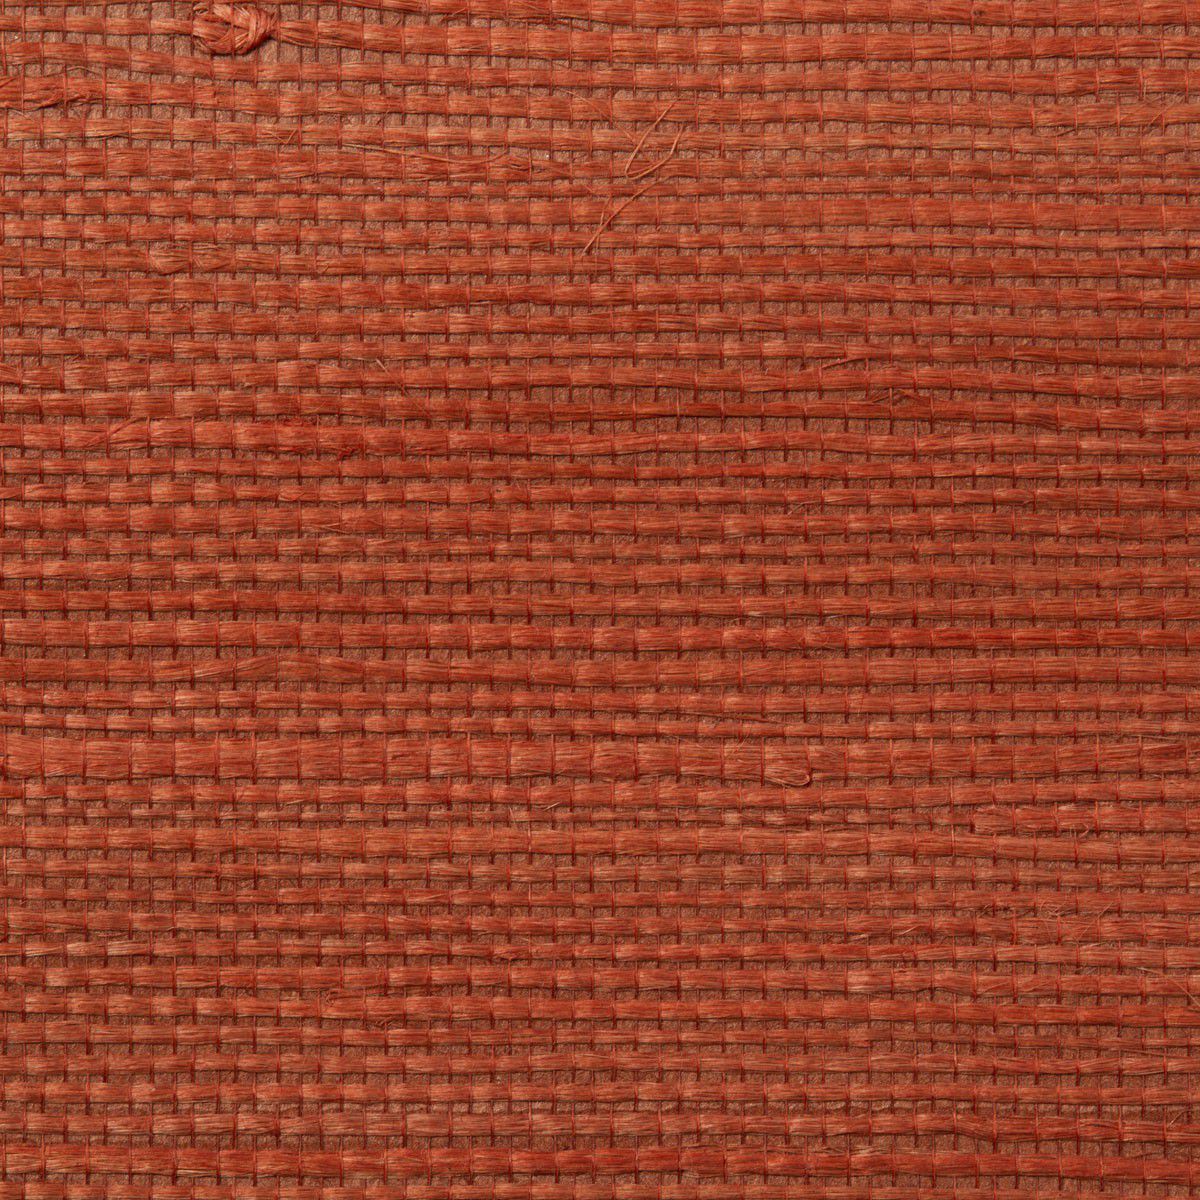 Rustic Wallpaper / Fabric / Plain / Fabric Look - Rustic Fabric ...